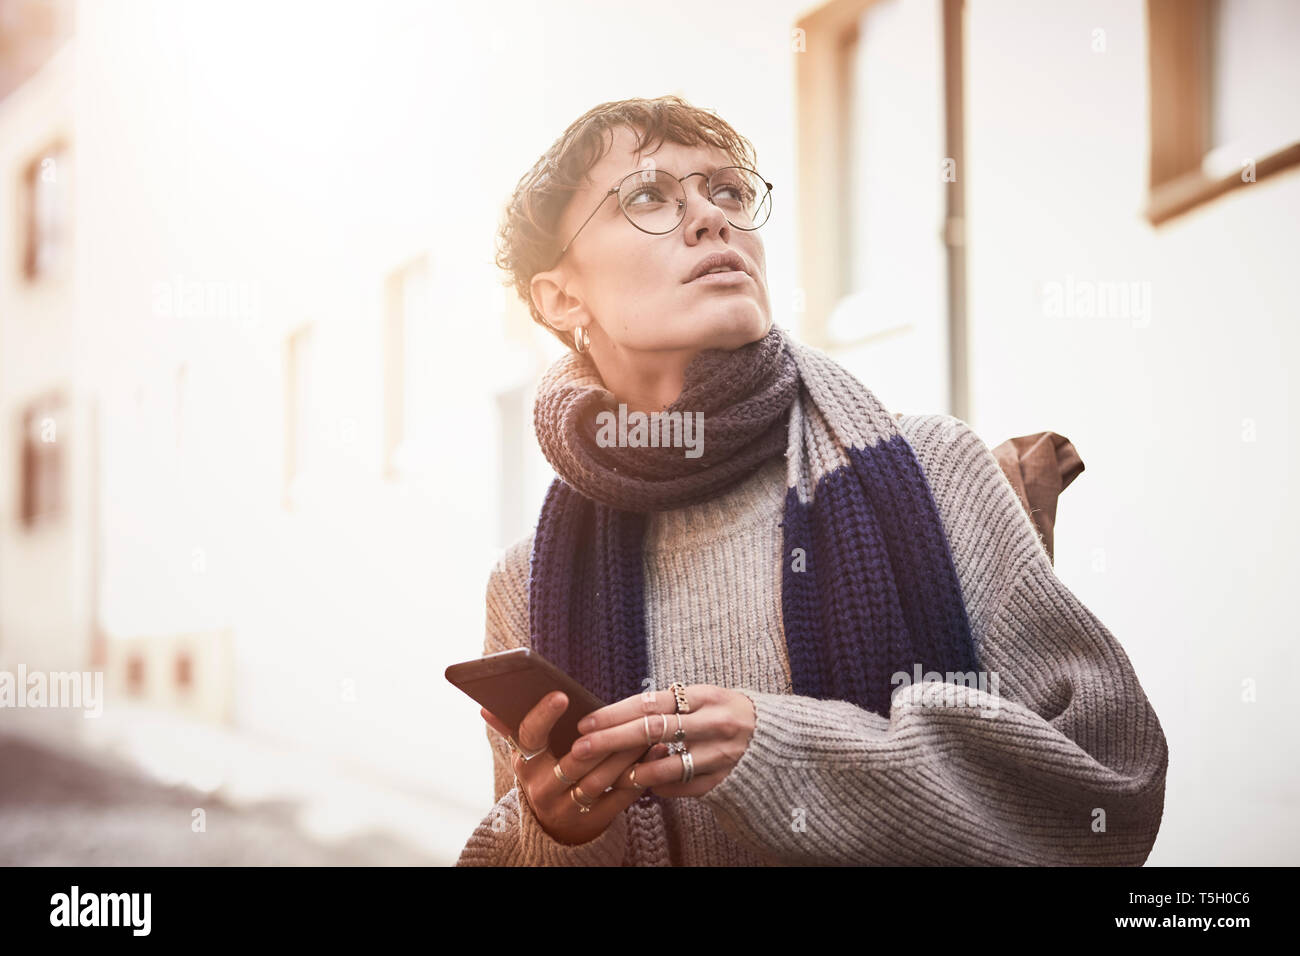 Alemania, Colonia, mujer de la ciudad, citytrip, utilizando el smartphone Foto de stock